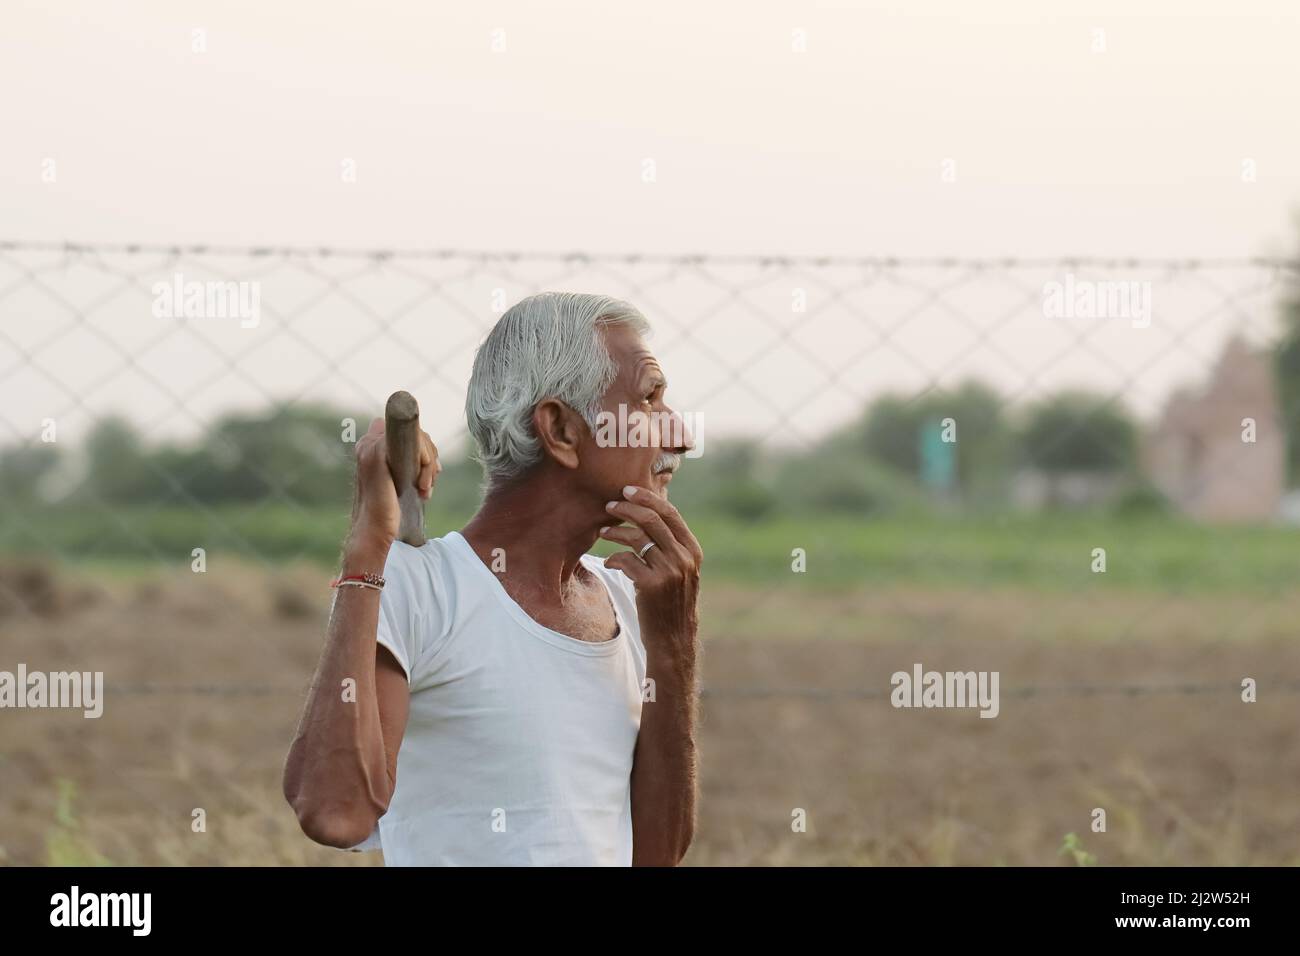 Primo piano di una foto di un agricoltore indiano anziano che pensa a qualcosa mentre tiene una pala in mano al tramonto Foto Stock